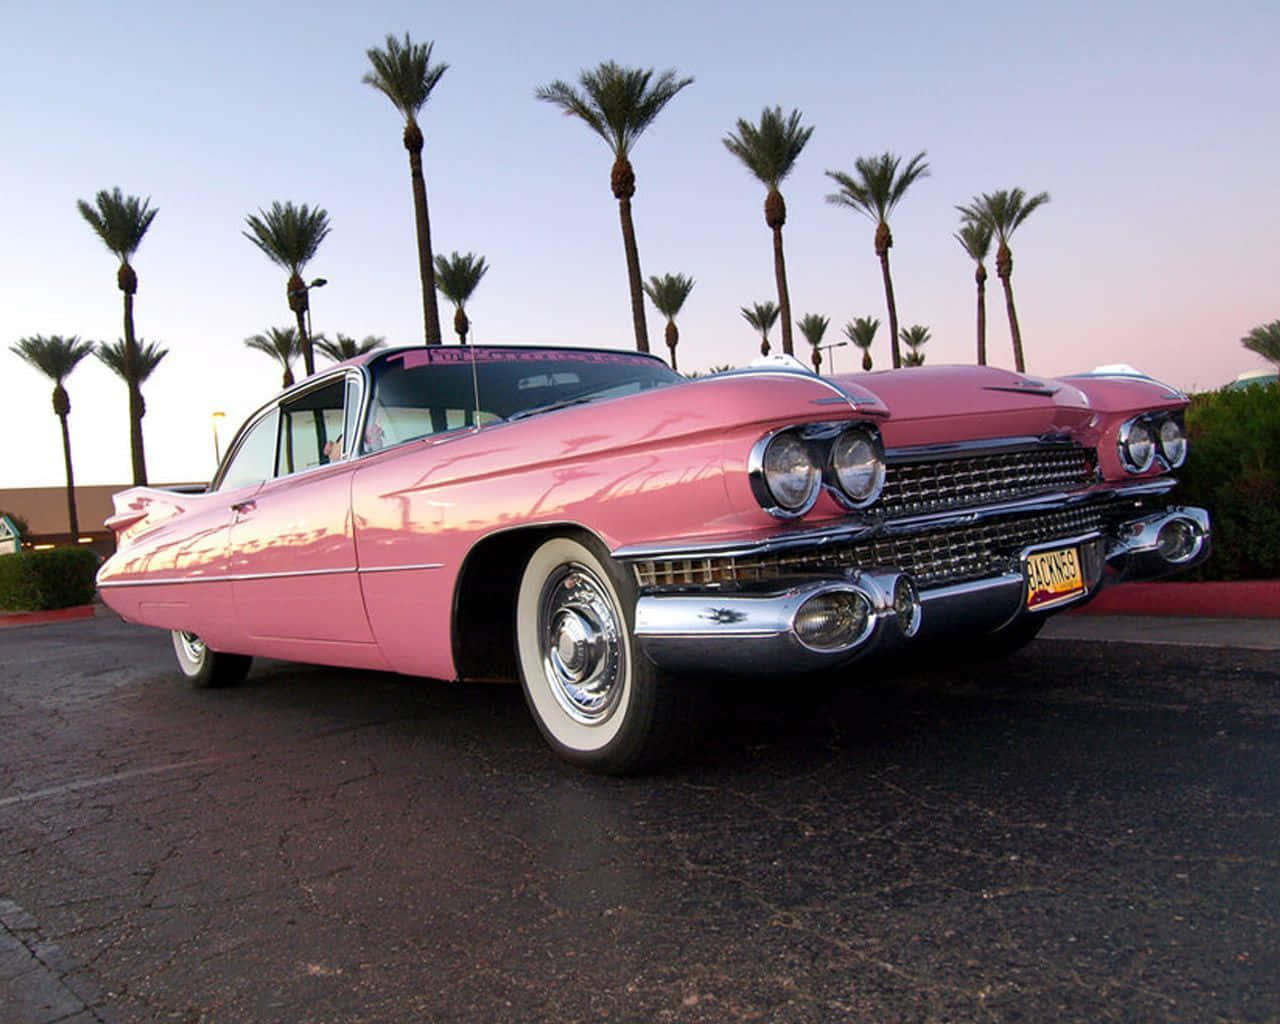 Et tidløst Elegant lyserød Vintage Bil står i det aftagende solen. Wallpaper